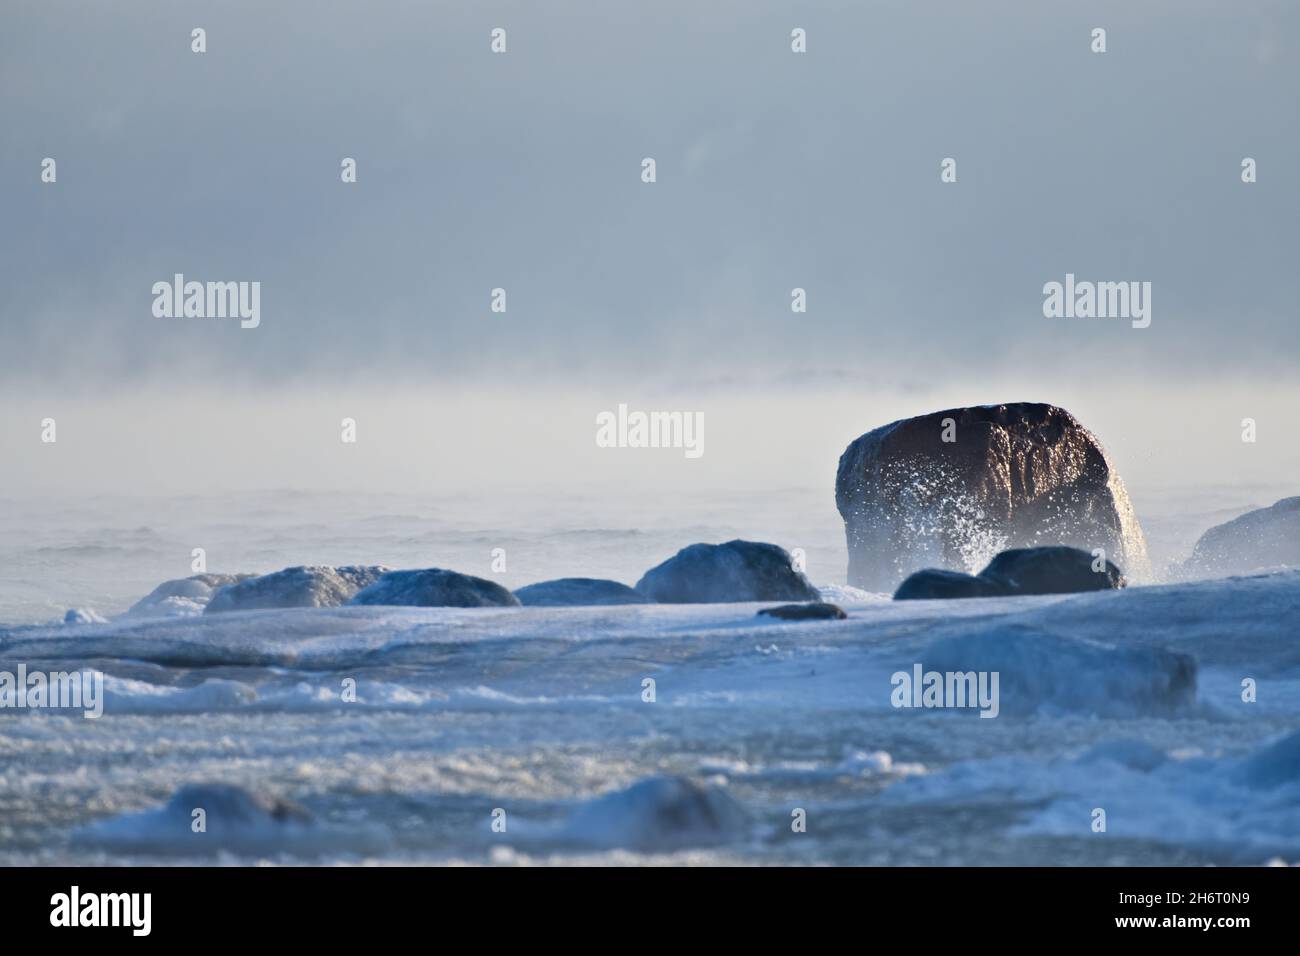 Roccia ricoperta di ghiaccio dal Mar Baltico che sta per gelare con acqua che schegge contro le rocce a Helsinki, Finlandia, il 14 gennaio 2021. Foto Stock